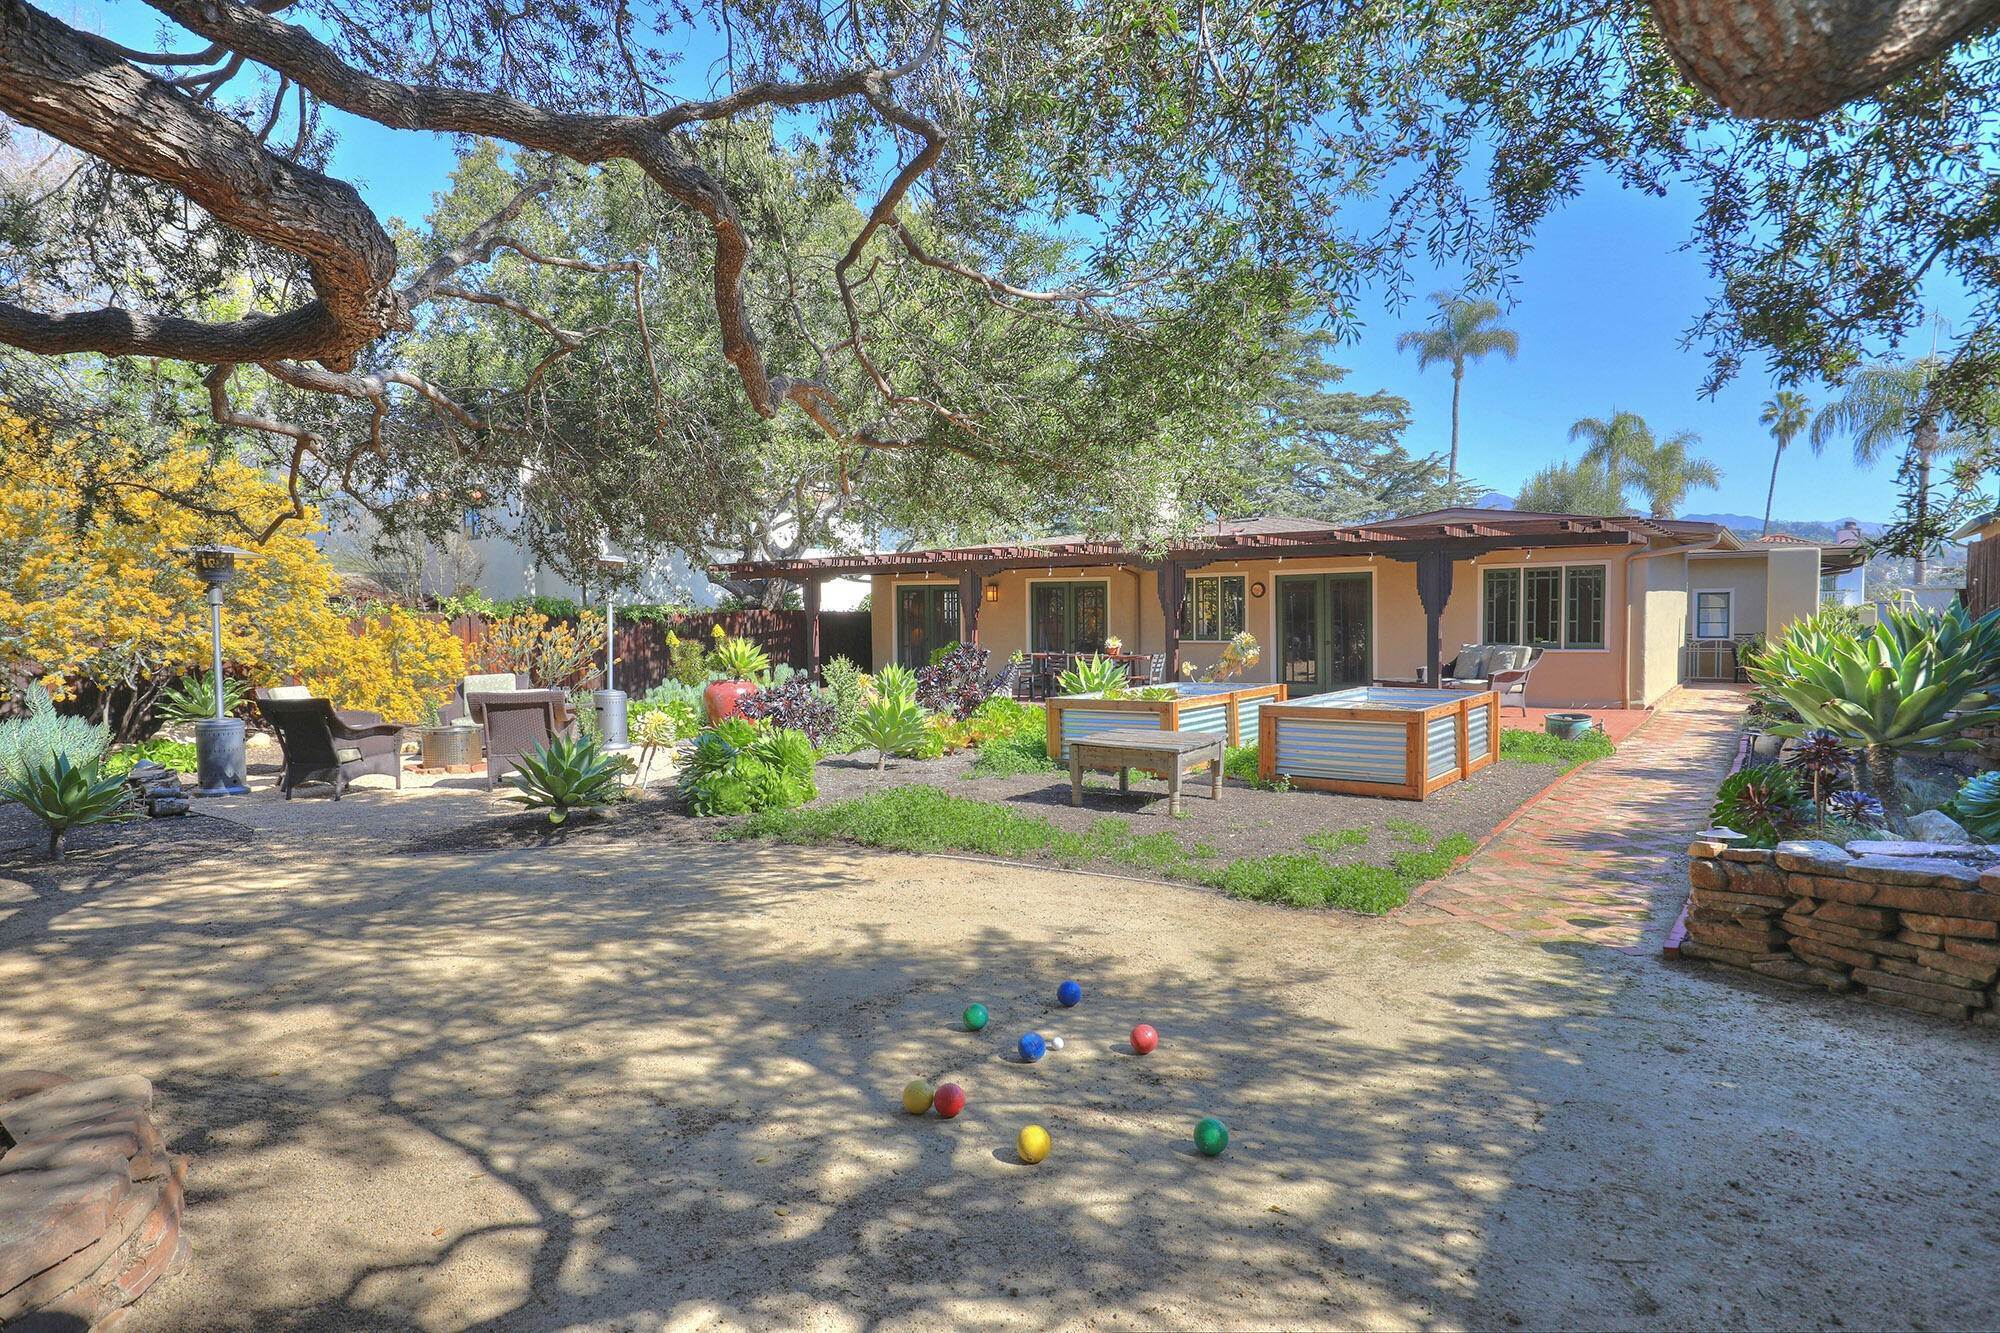 20. Estate at 2737 Cuesta Road Santa Barbara, California 93105 United States